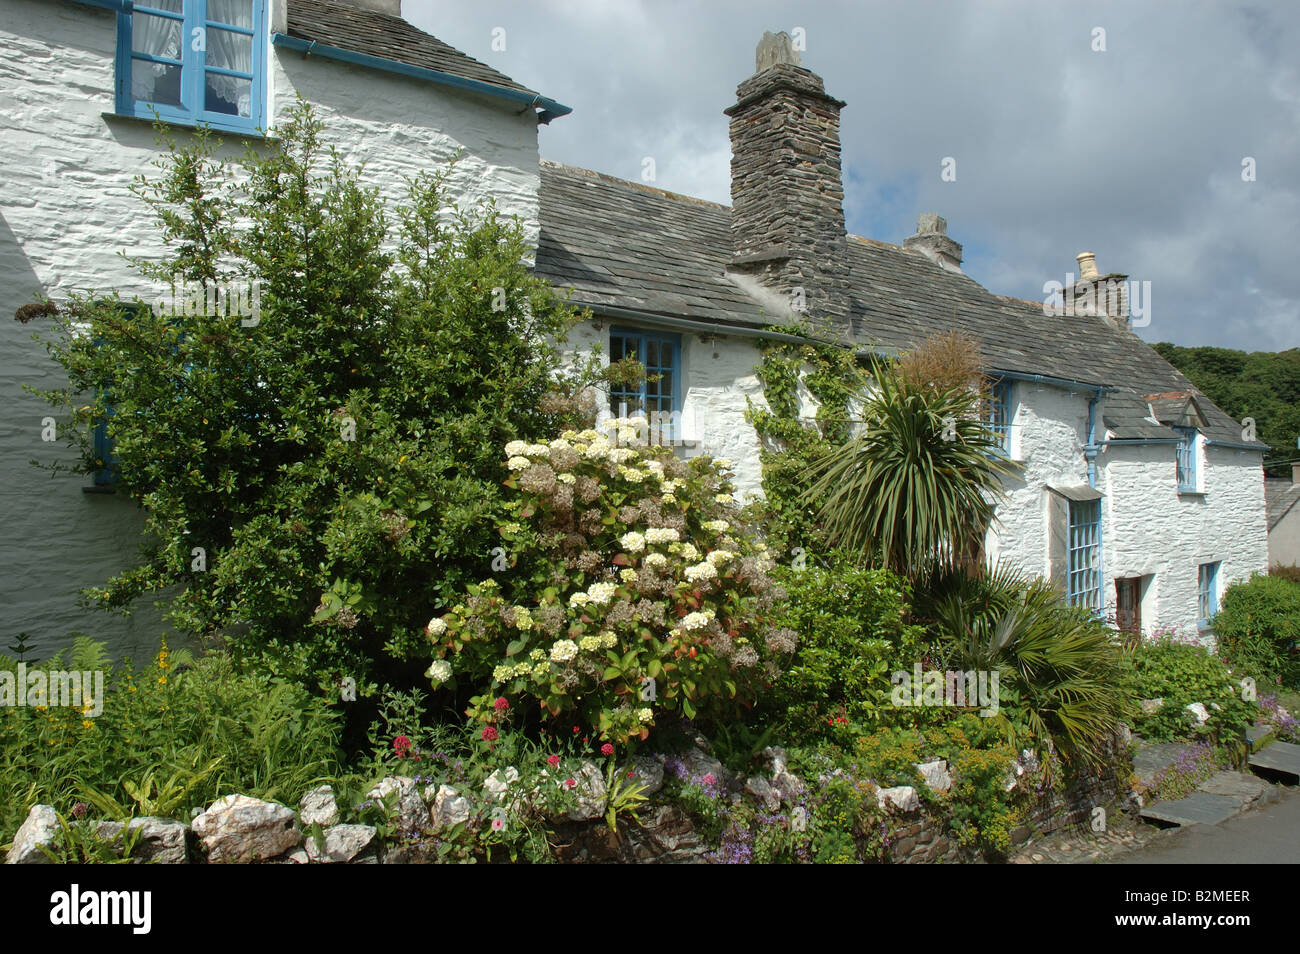 whitewashed cottages, Boscastle, Cornwall, England, UK Stock Photo